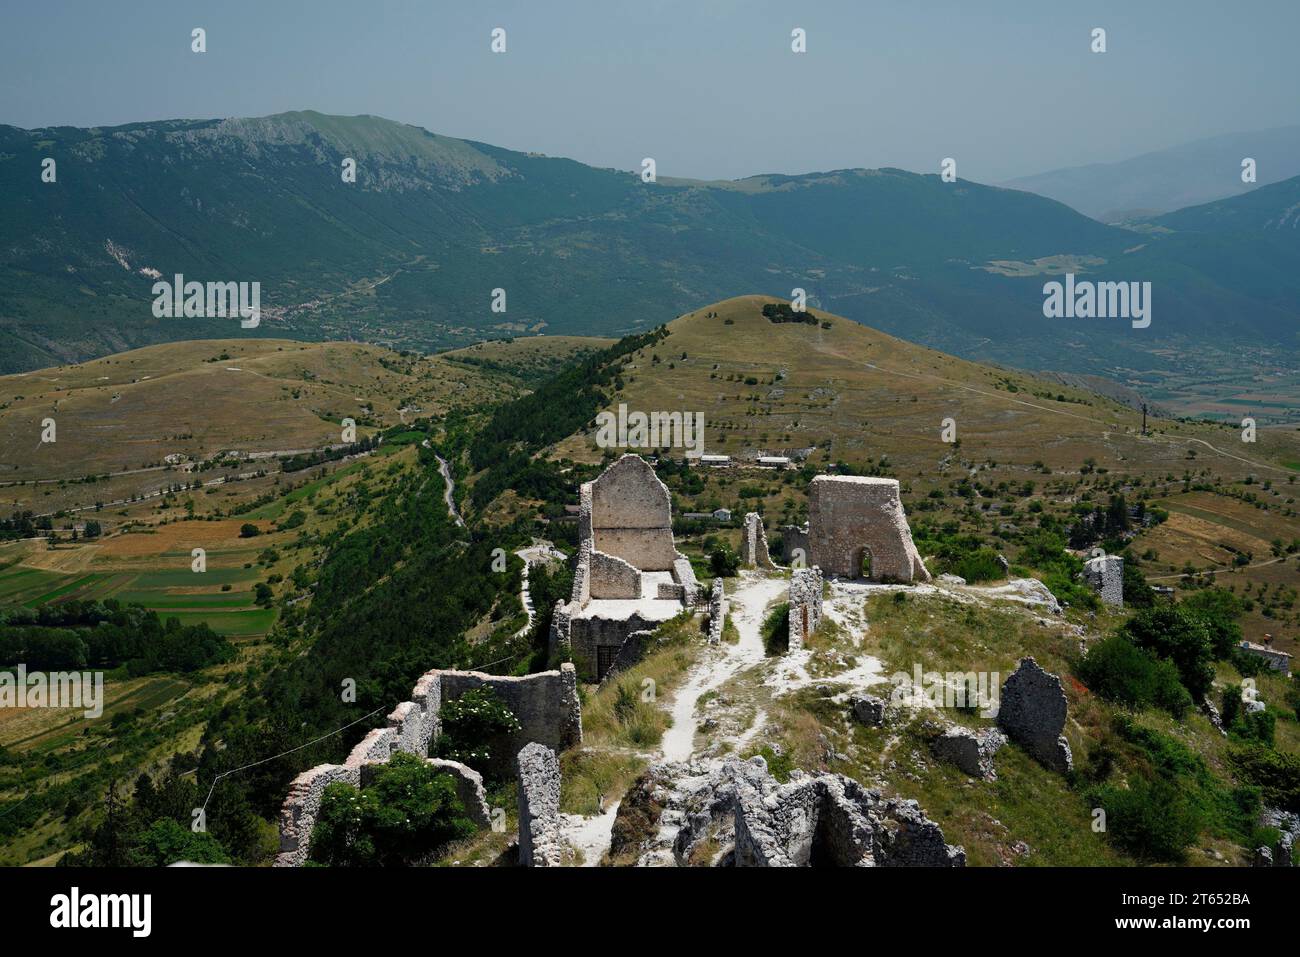 Rocca Calascio, Apennines, Province of L' (Aquila), Abruzzo Region, Italy Stock Photo